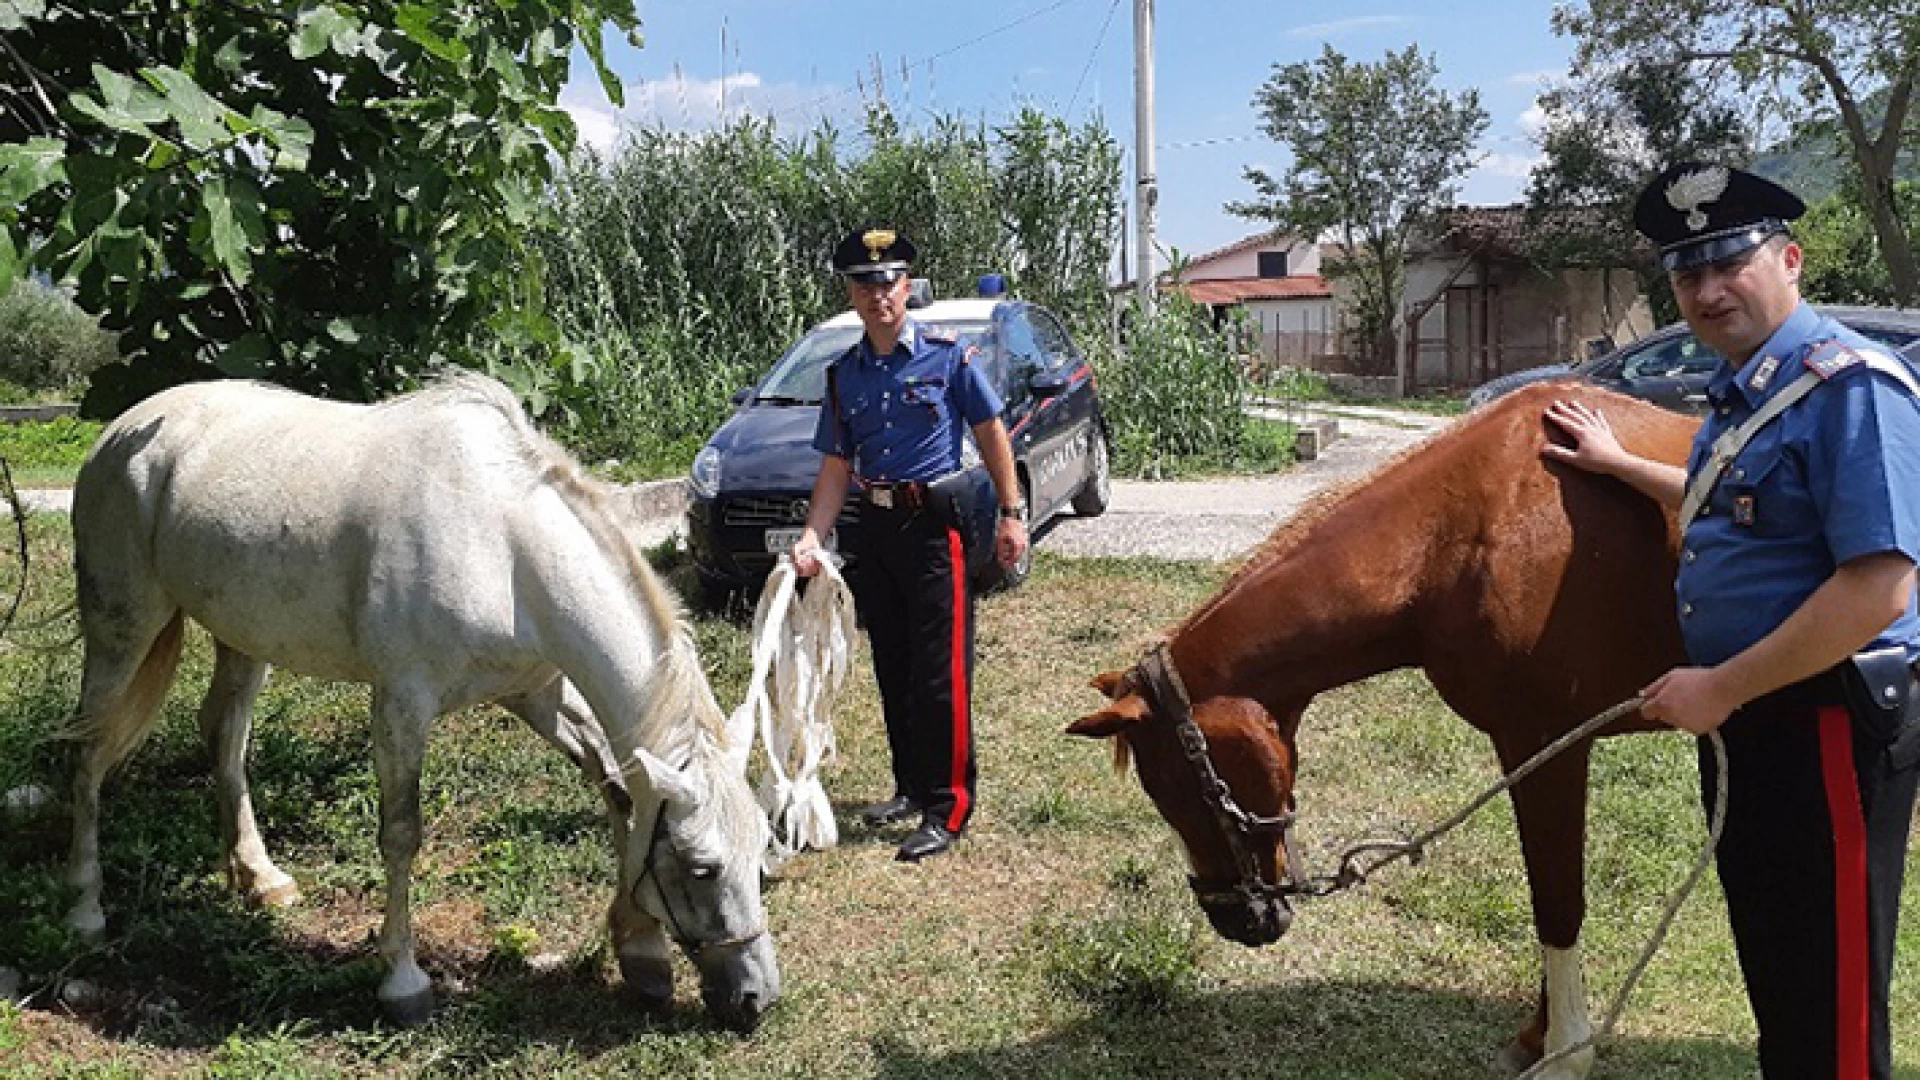 Sesto Campano: Ricettazione di cavalli, coppia di casertani incastrata dai Carabinieri. Equini recuperati e restituiti ai proprietari.